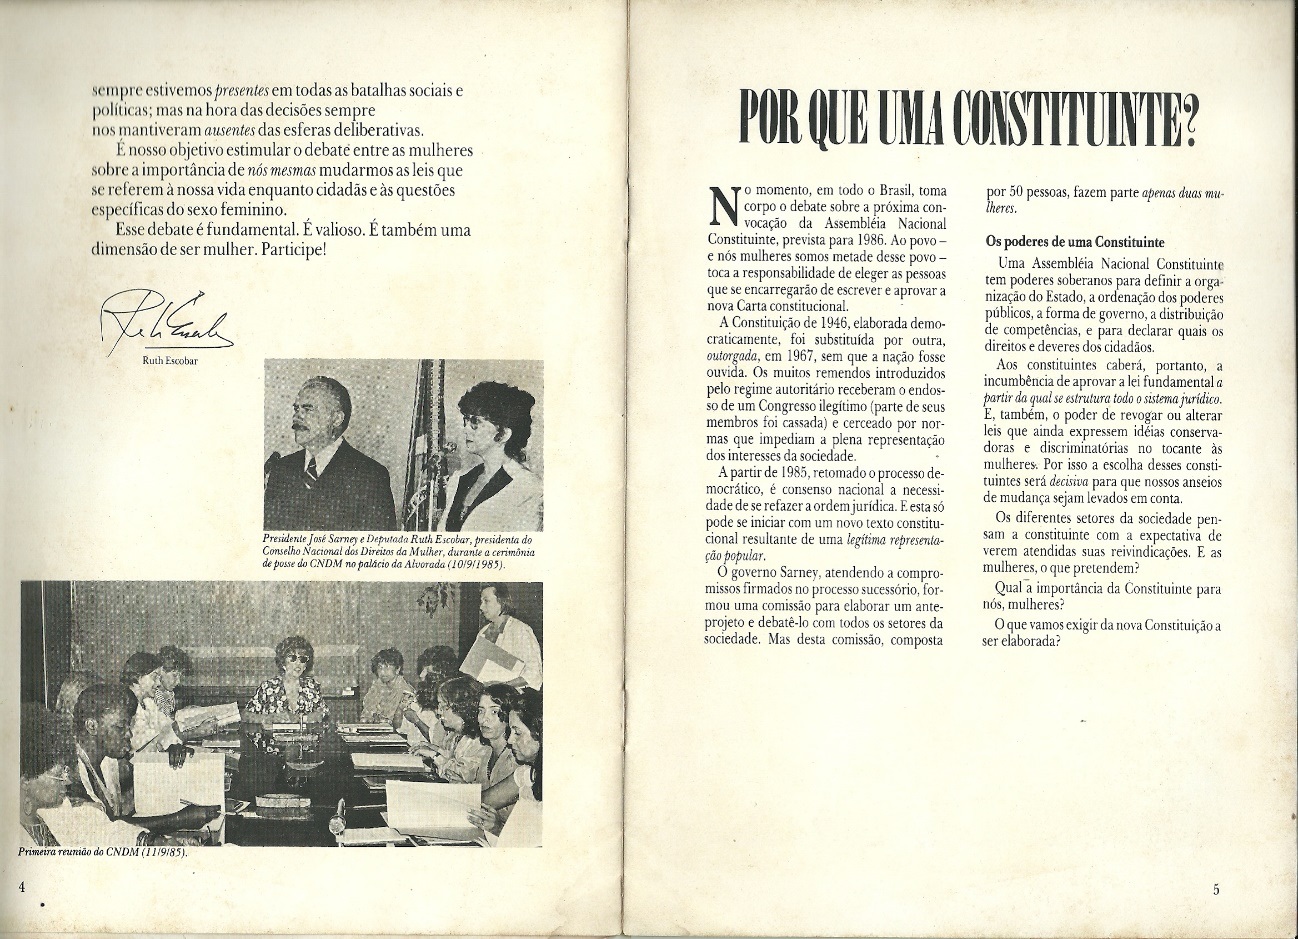 Presidente  da República do Brasil Sarney com a deputada Escobar na posse do  CNDM em setembro de 1985 e Reunião do pleno do CNDM, ainda sob a  presidência de Escobar.